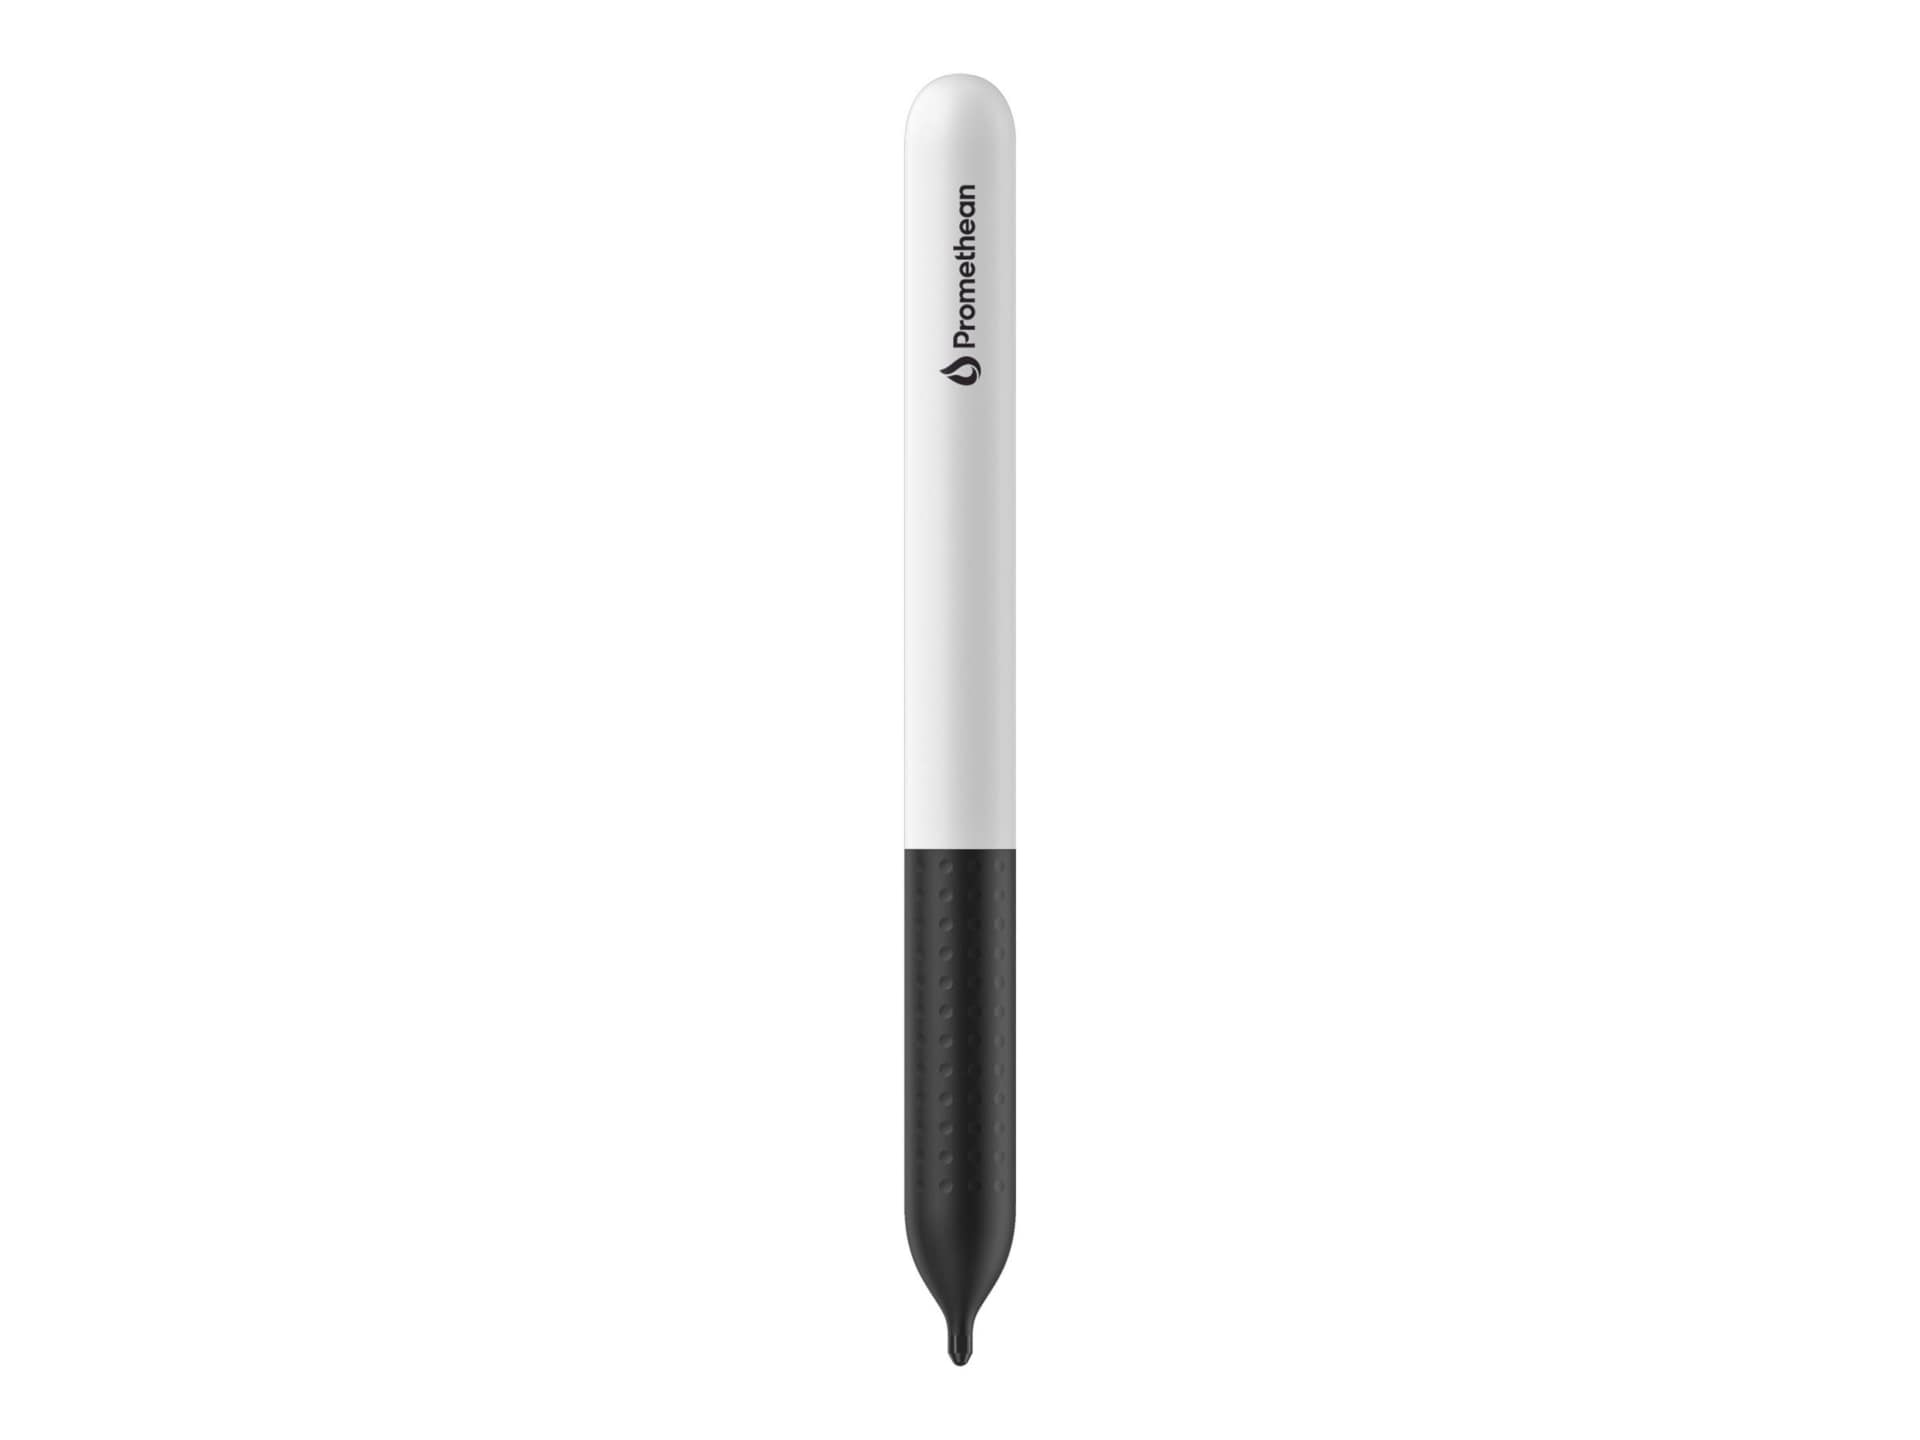 Promethean ActivPanel V9 - digital pen